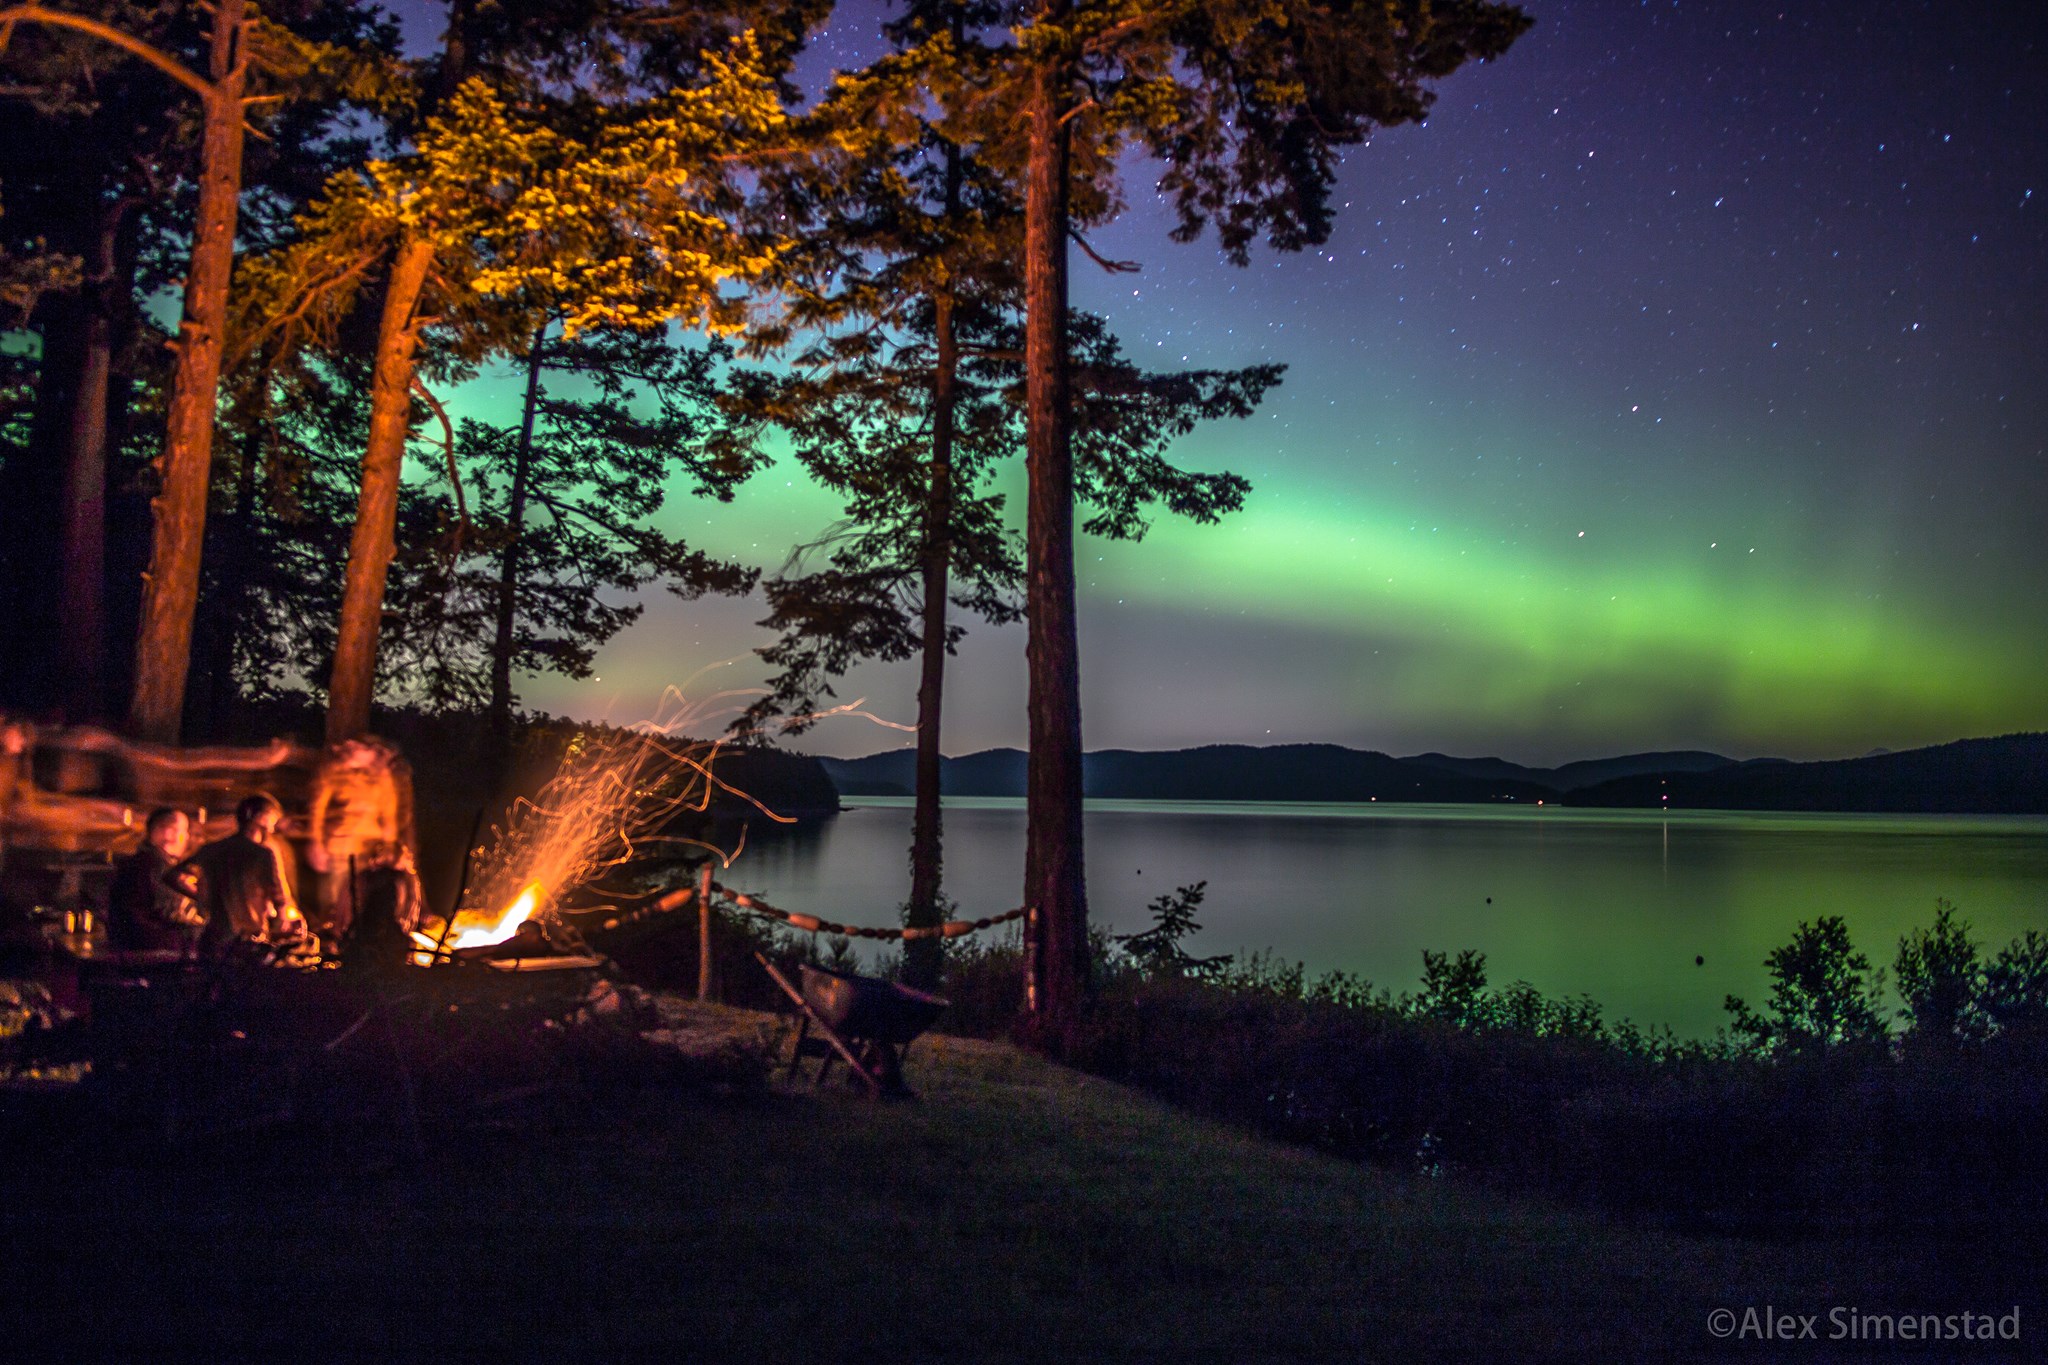 Photos: Northern Lights put on dazzling display over Puget Sound region | KOMO2048 x 1365